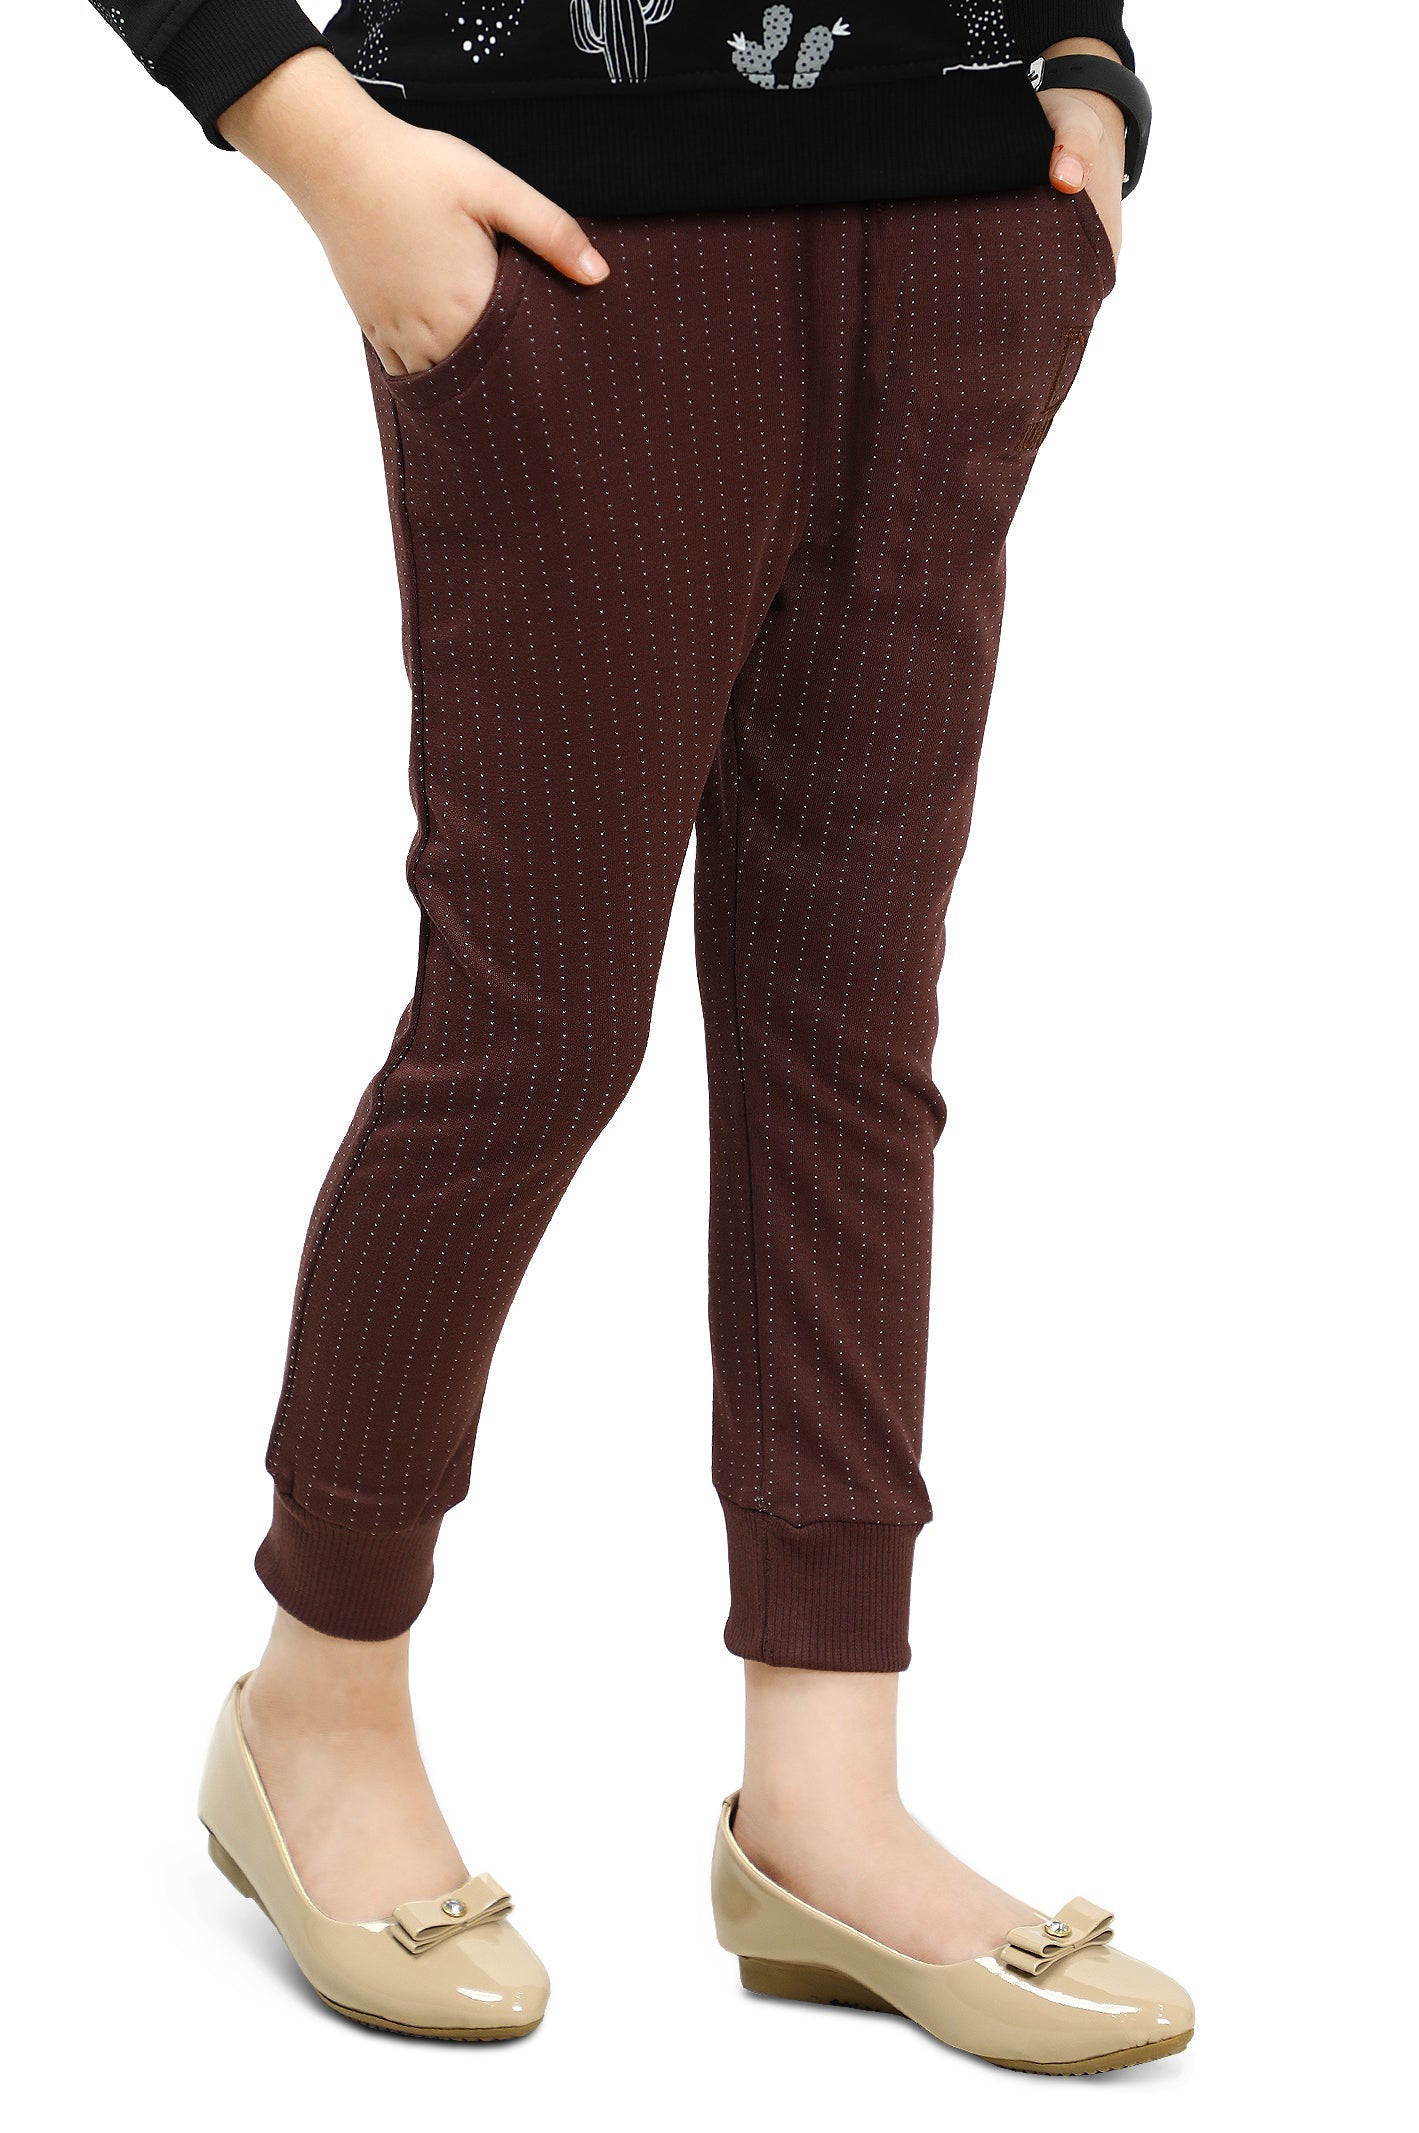 Trouser For Girls SKU: KJP-0001-BROWN - Diners